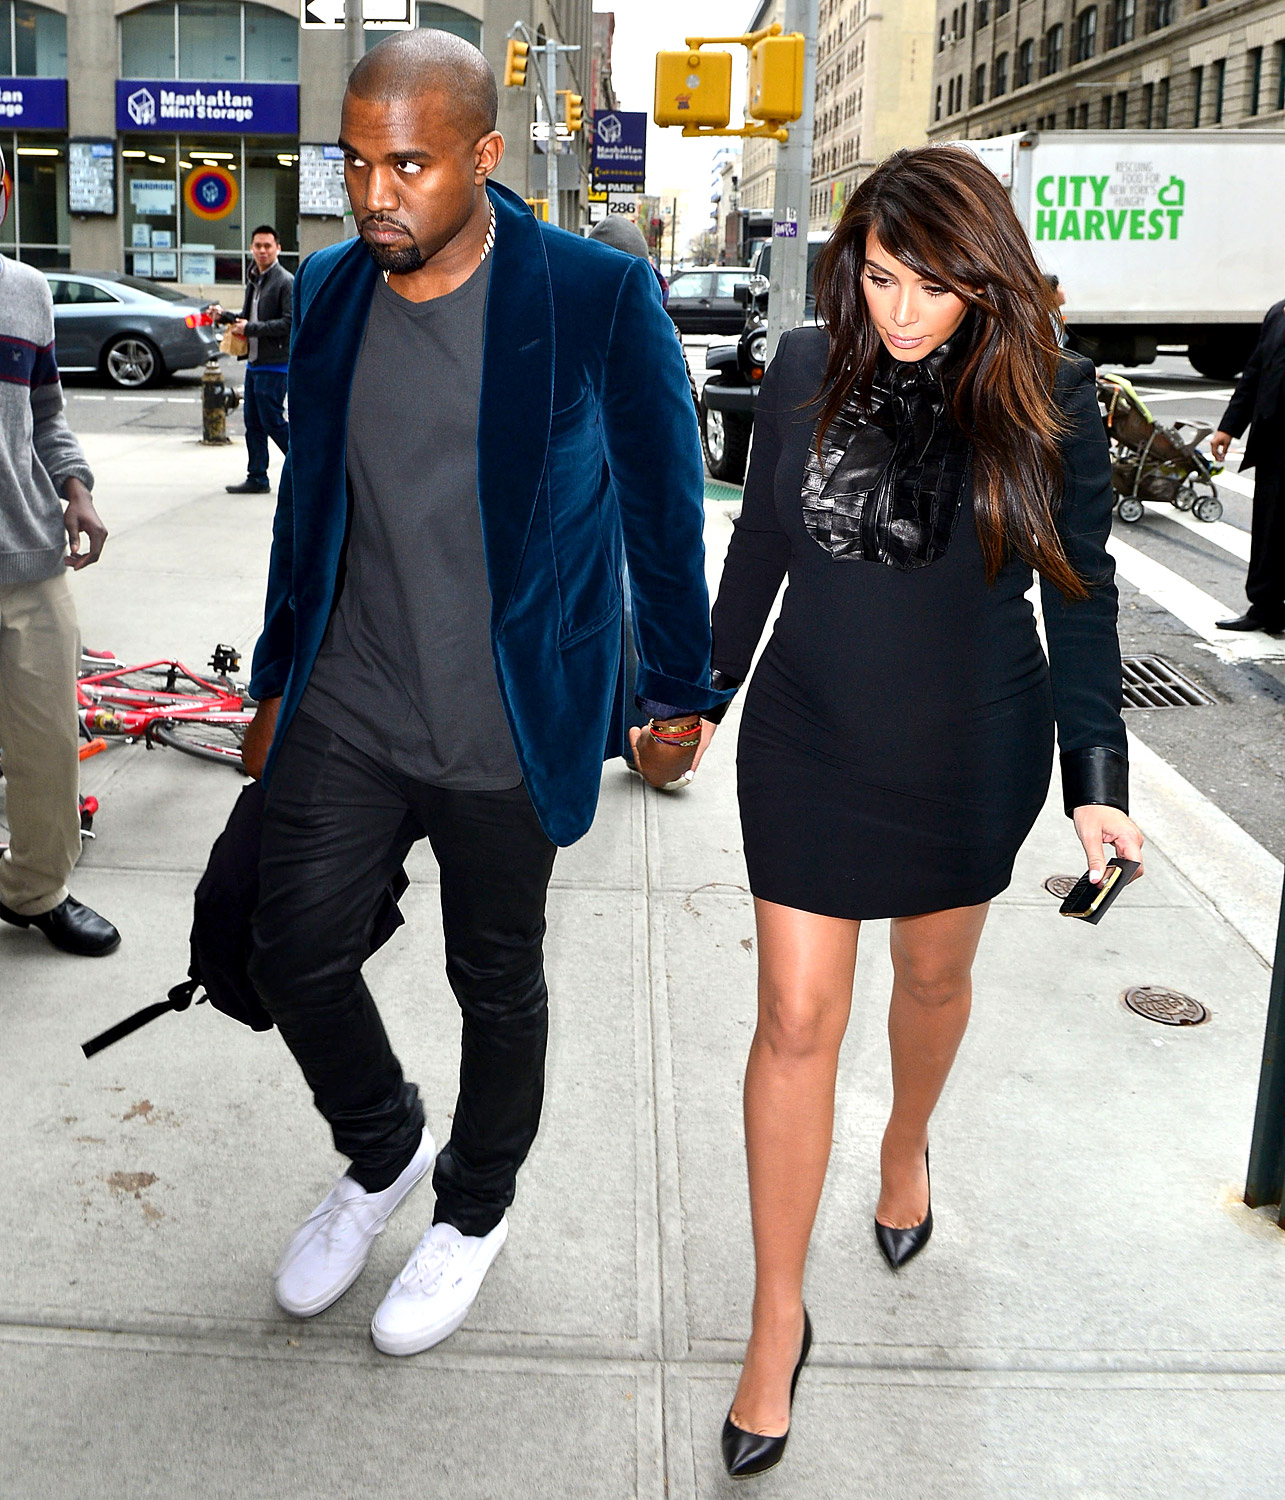 Kanye West leaves Kim K again amidst cheating scandal 